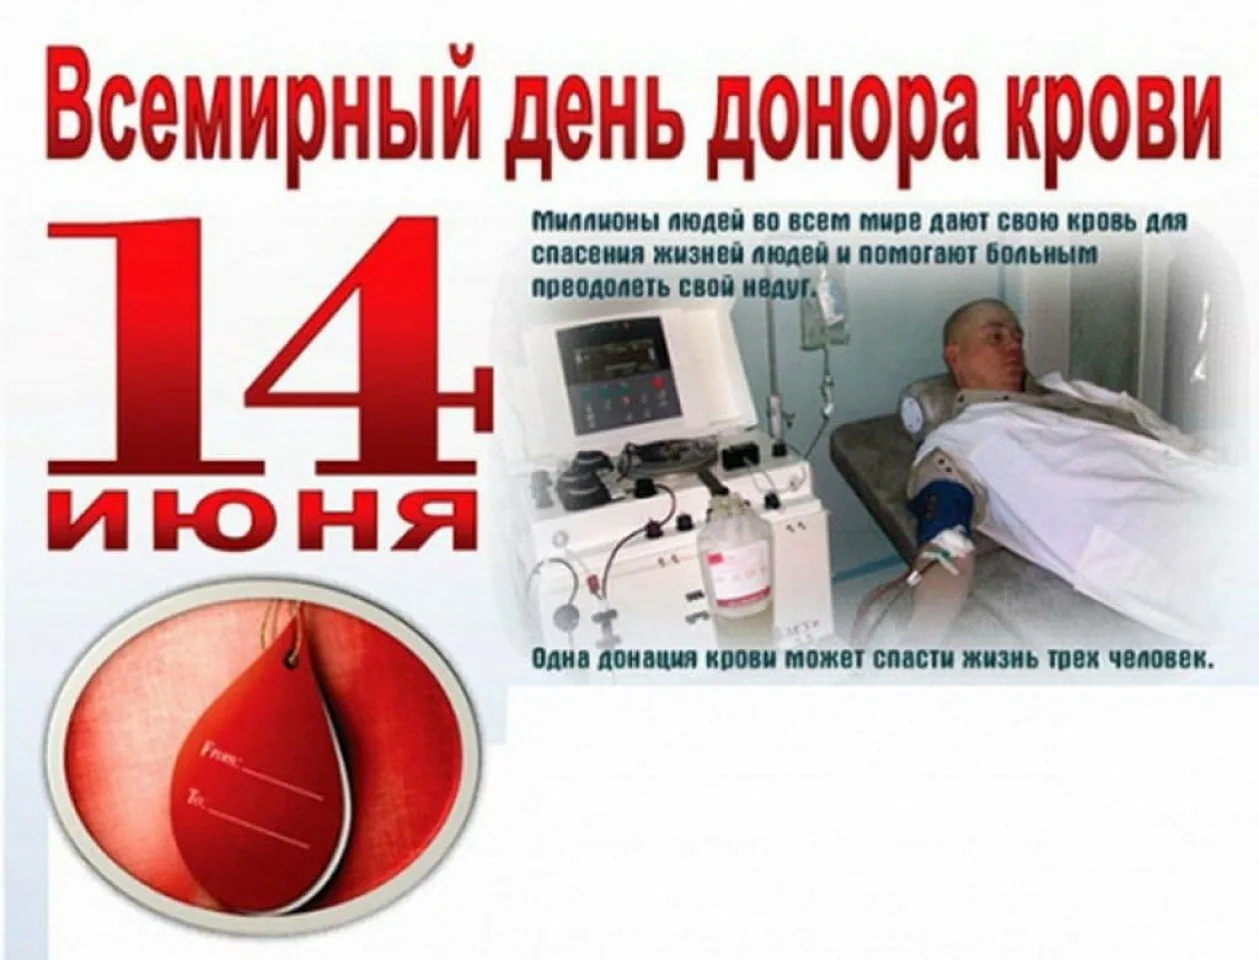 Всемирный день донора. 14 Июня Всемирный день донора крови. С днем донора поздравление. Всемирный день донора крови открытки.